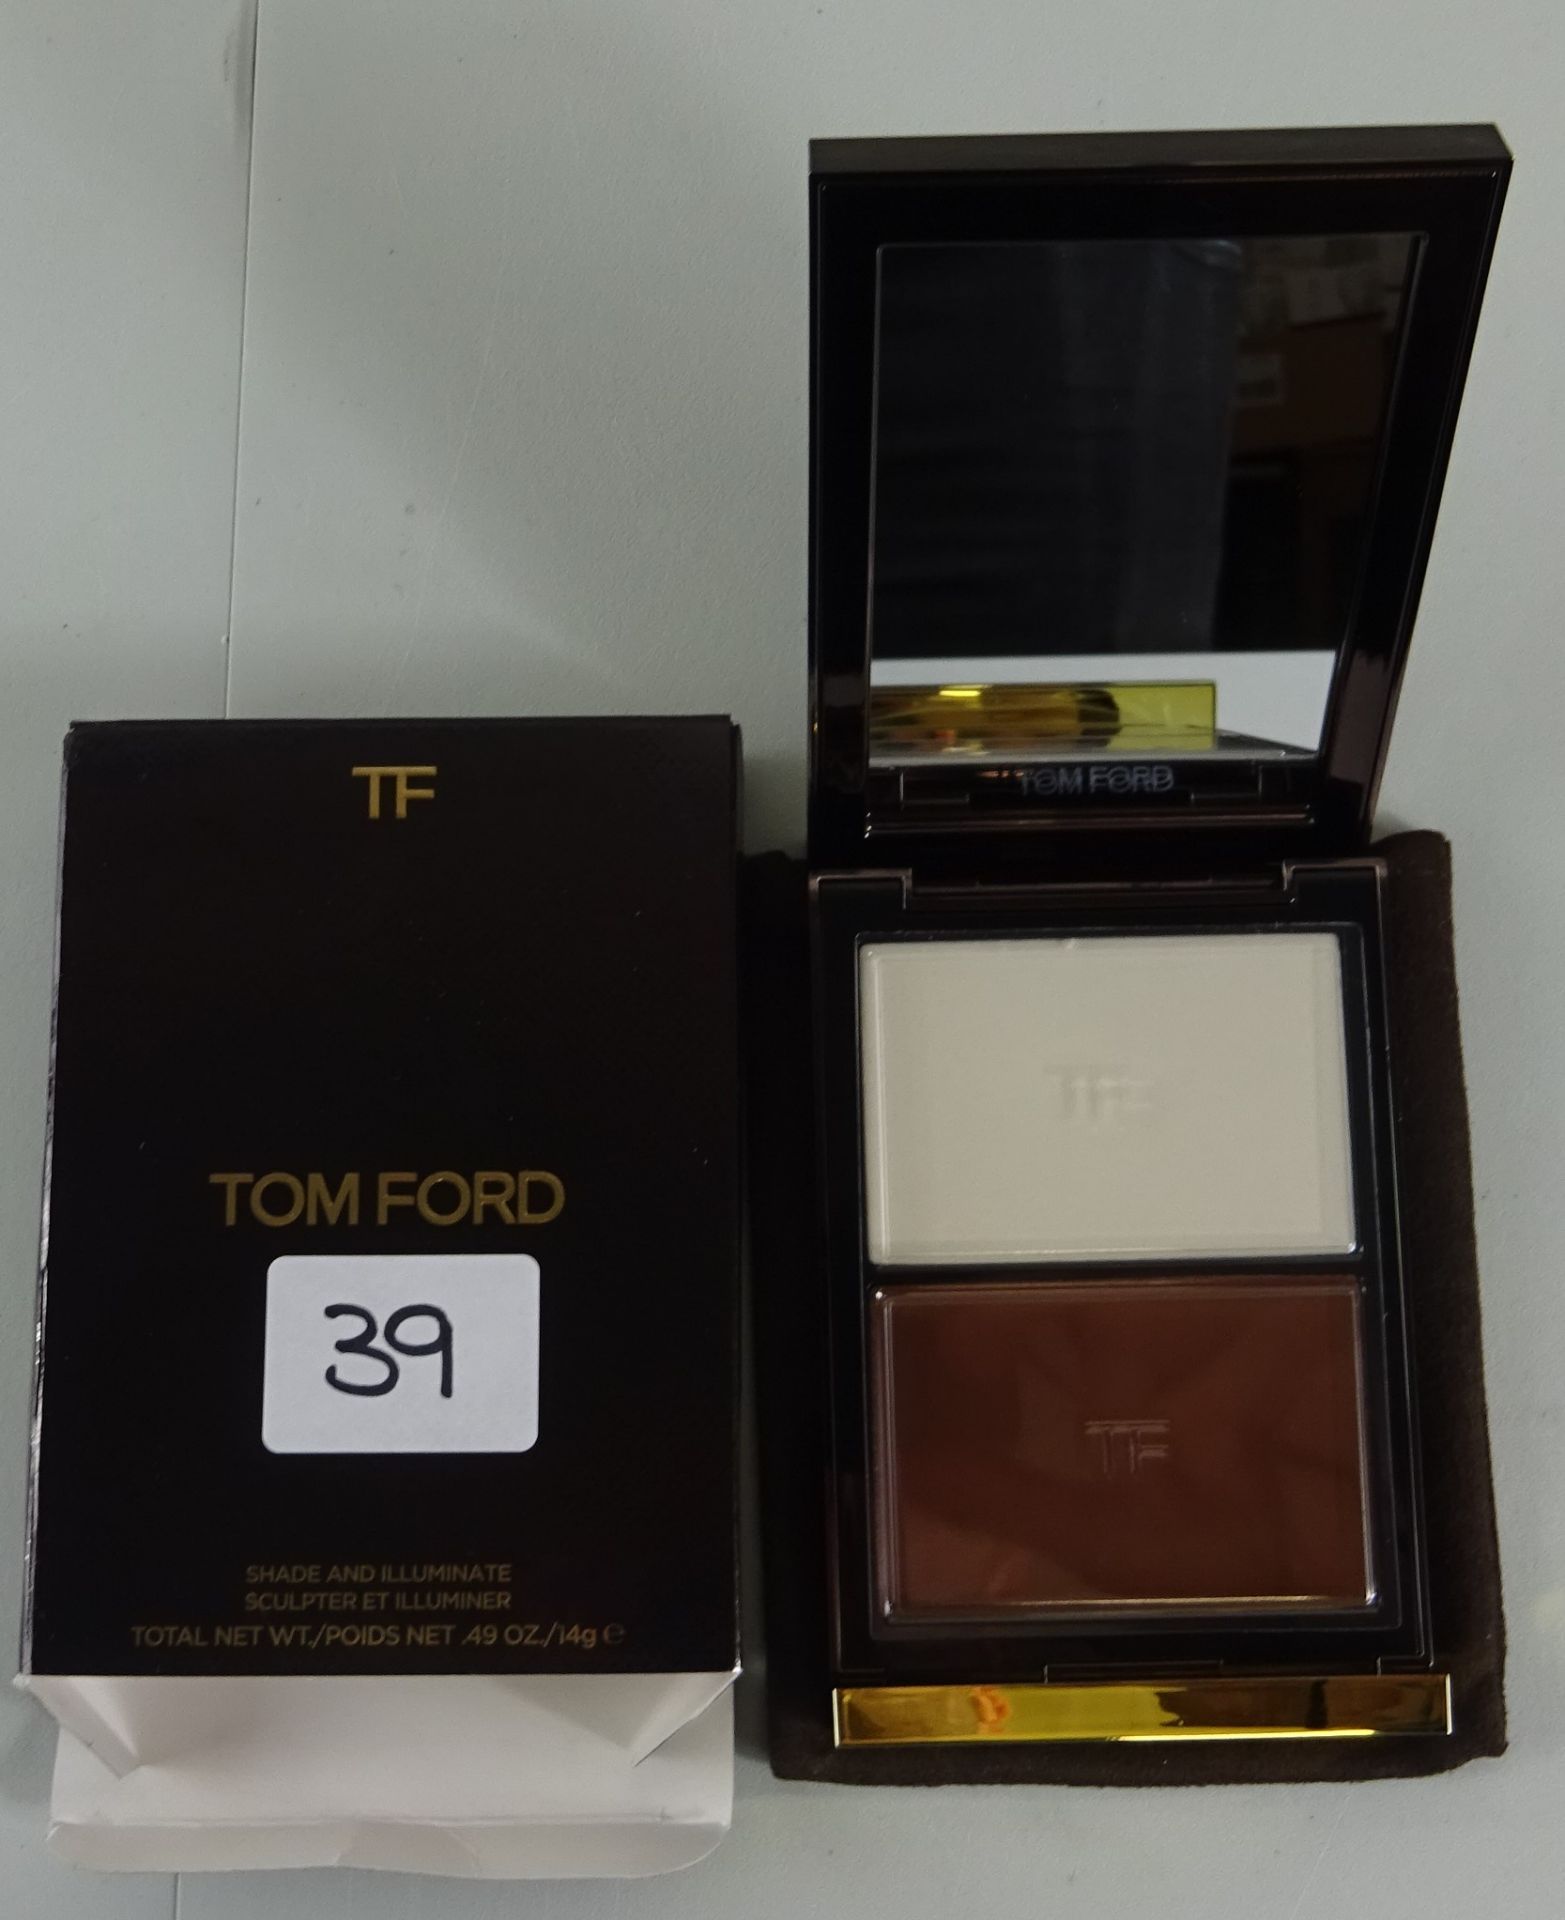 Tom Ford Shade & Illuminat make up - RRP £62.00